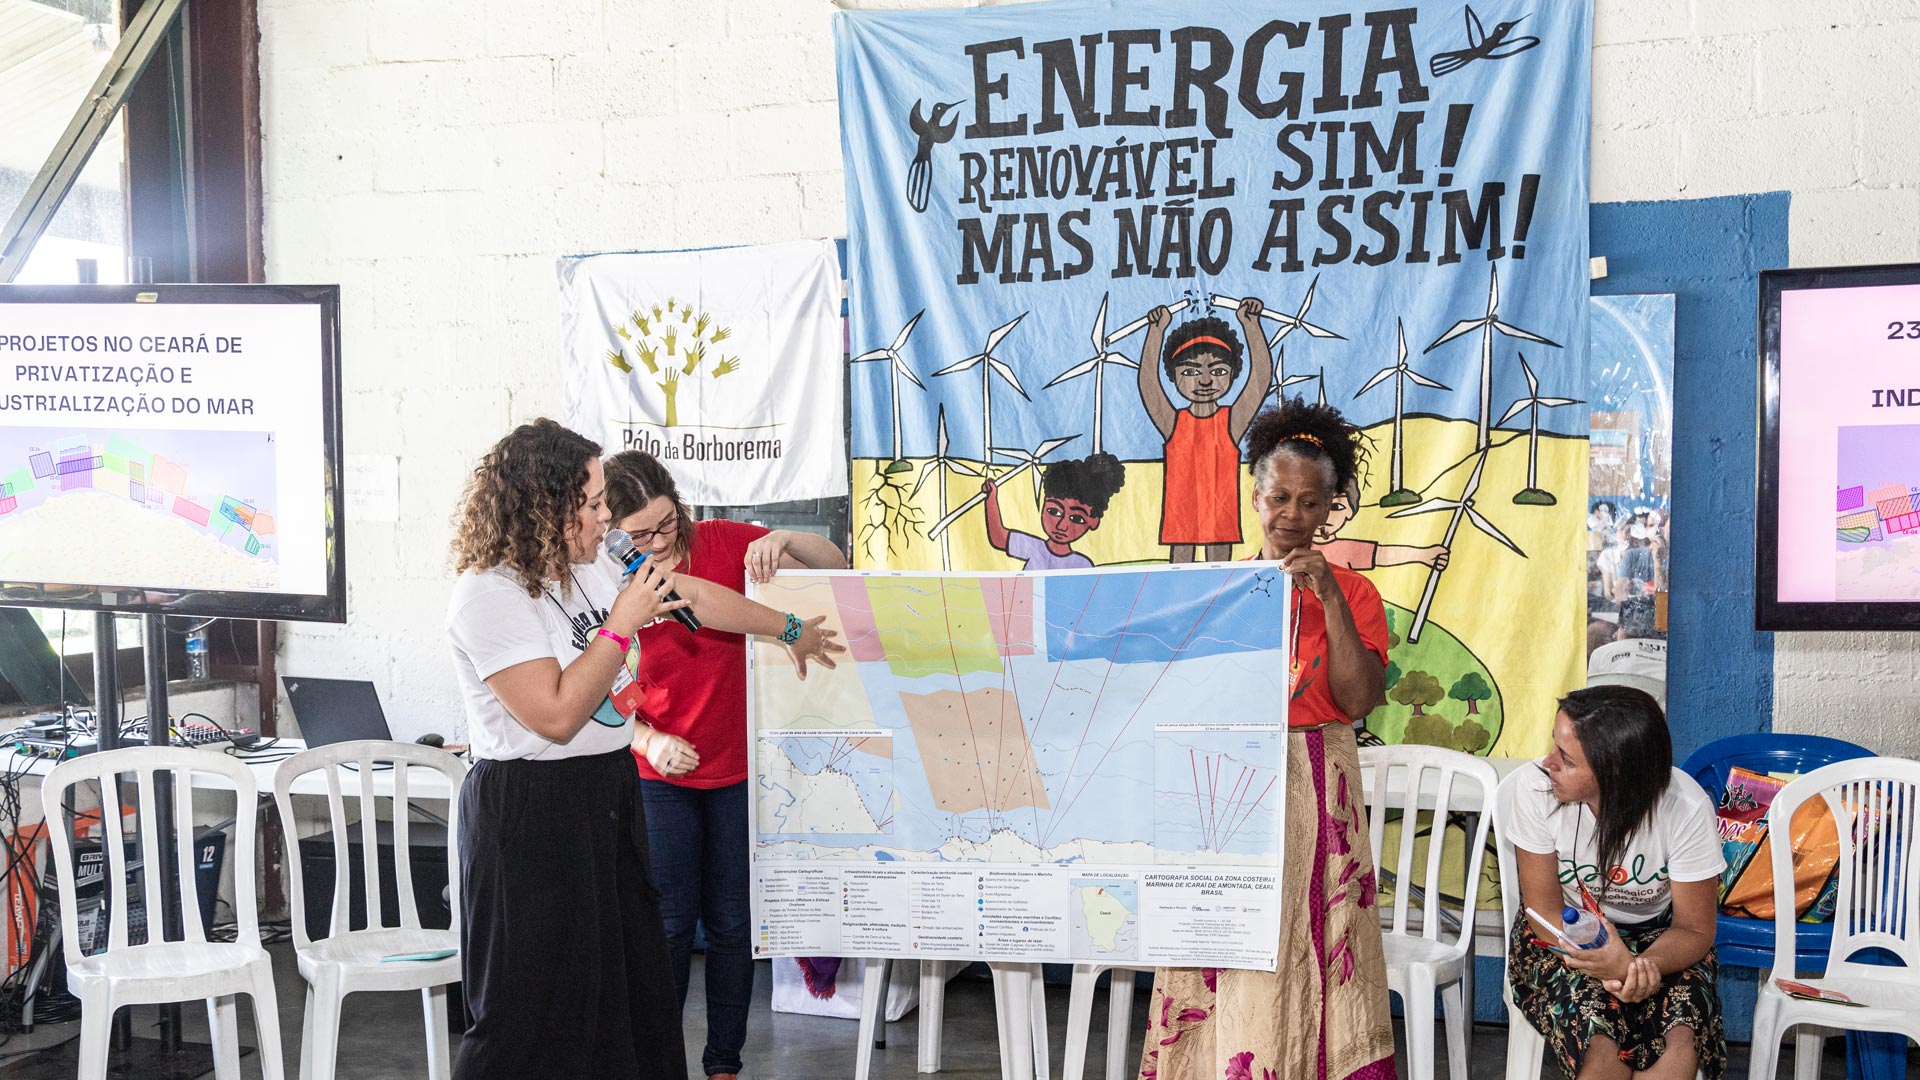 Alanna Carneiro, fundadora e coordenadora do Eco Maretório, explicou como a instalação das hélices vem transformando o mar num “hidrofúndio”. Foto: Zô Guimarães/ActionAid